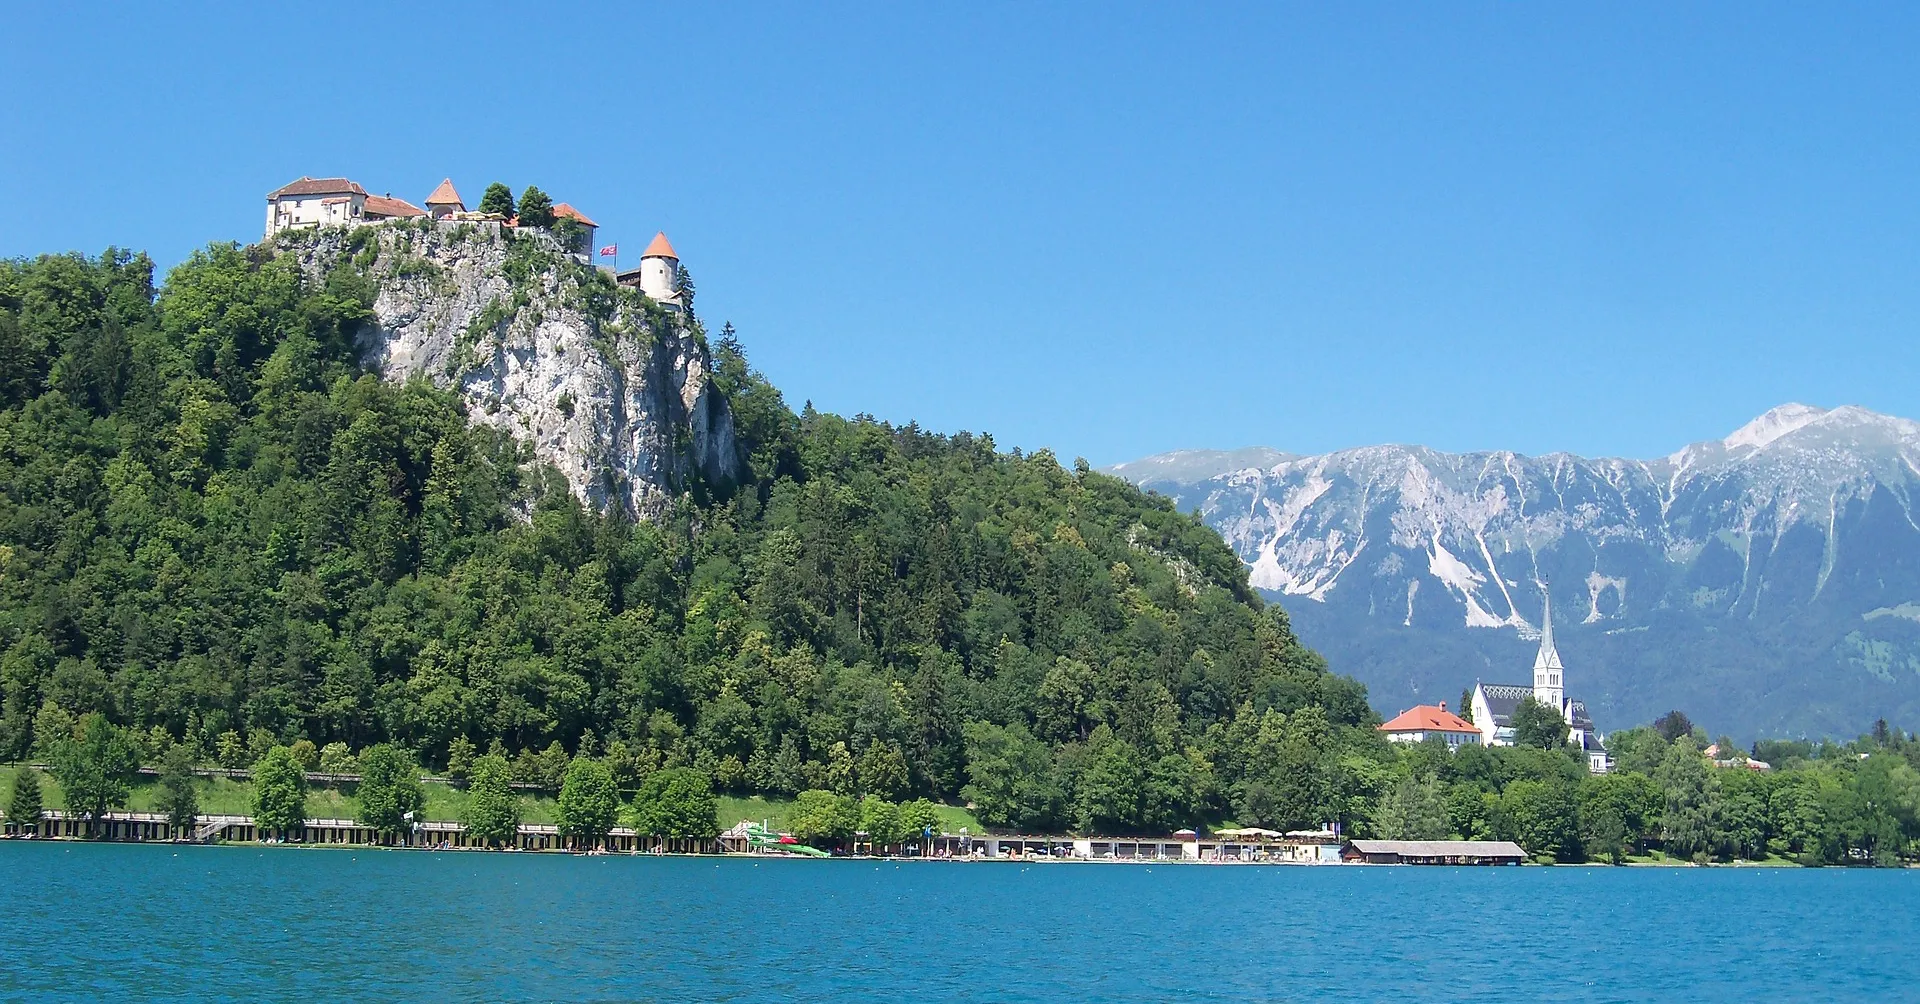 Blejski grad, turistični biser Slovenije